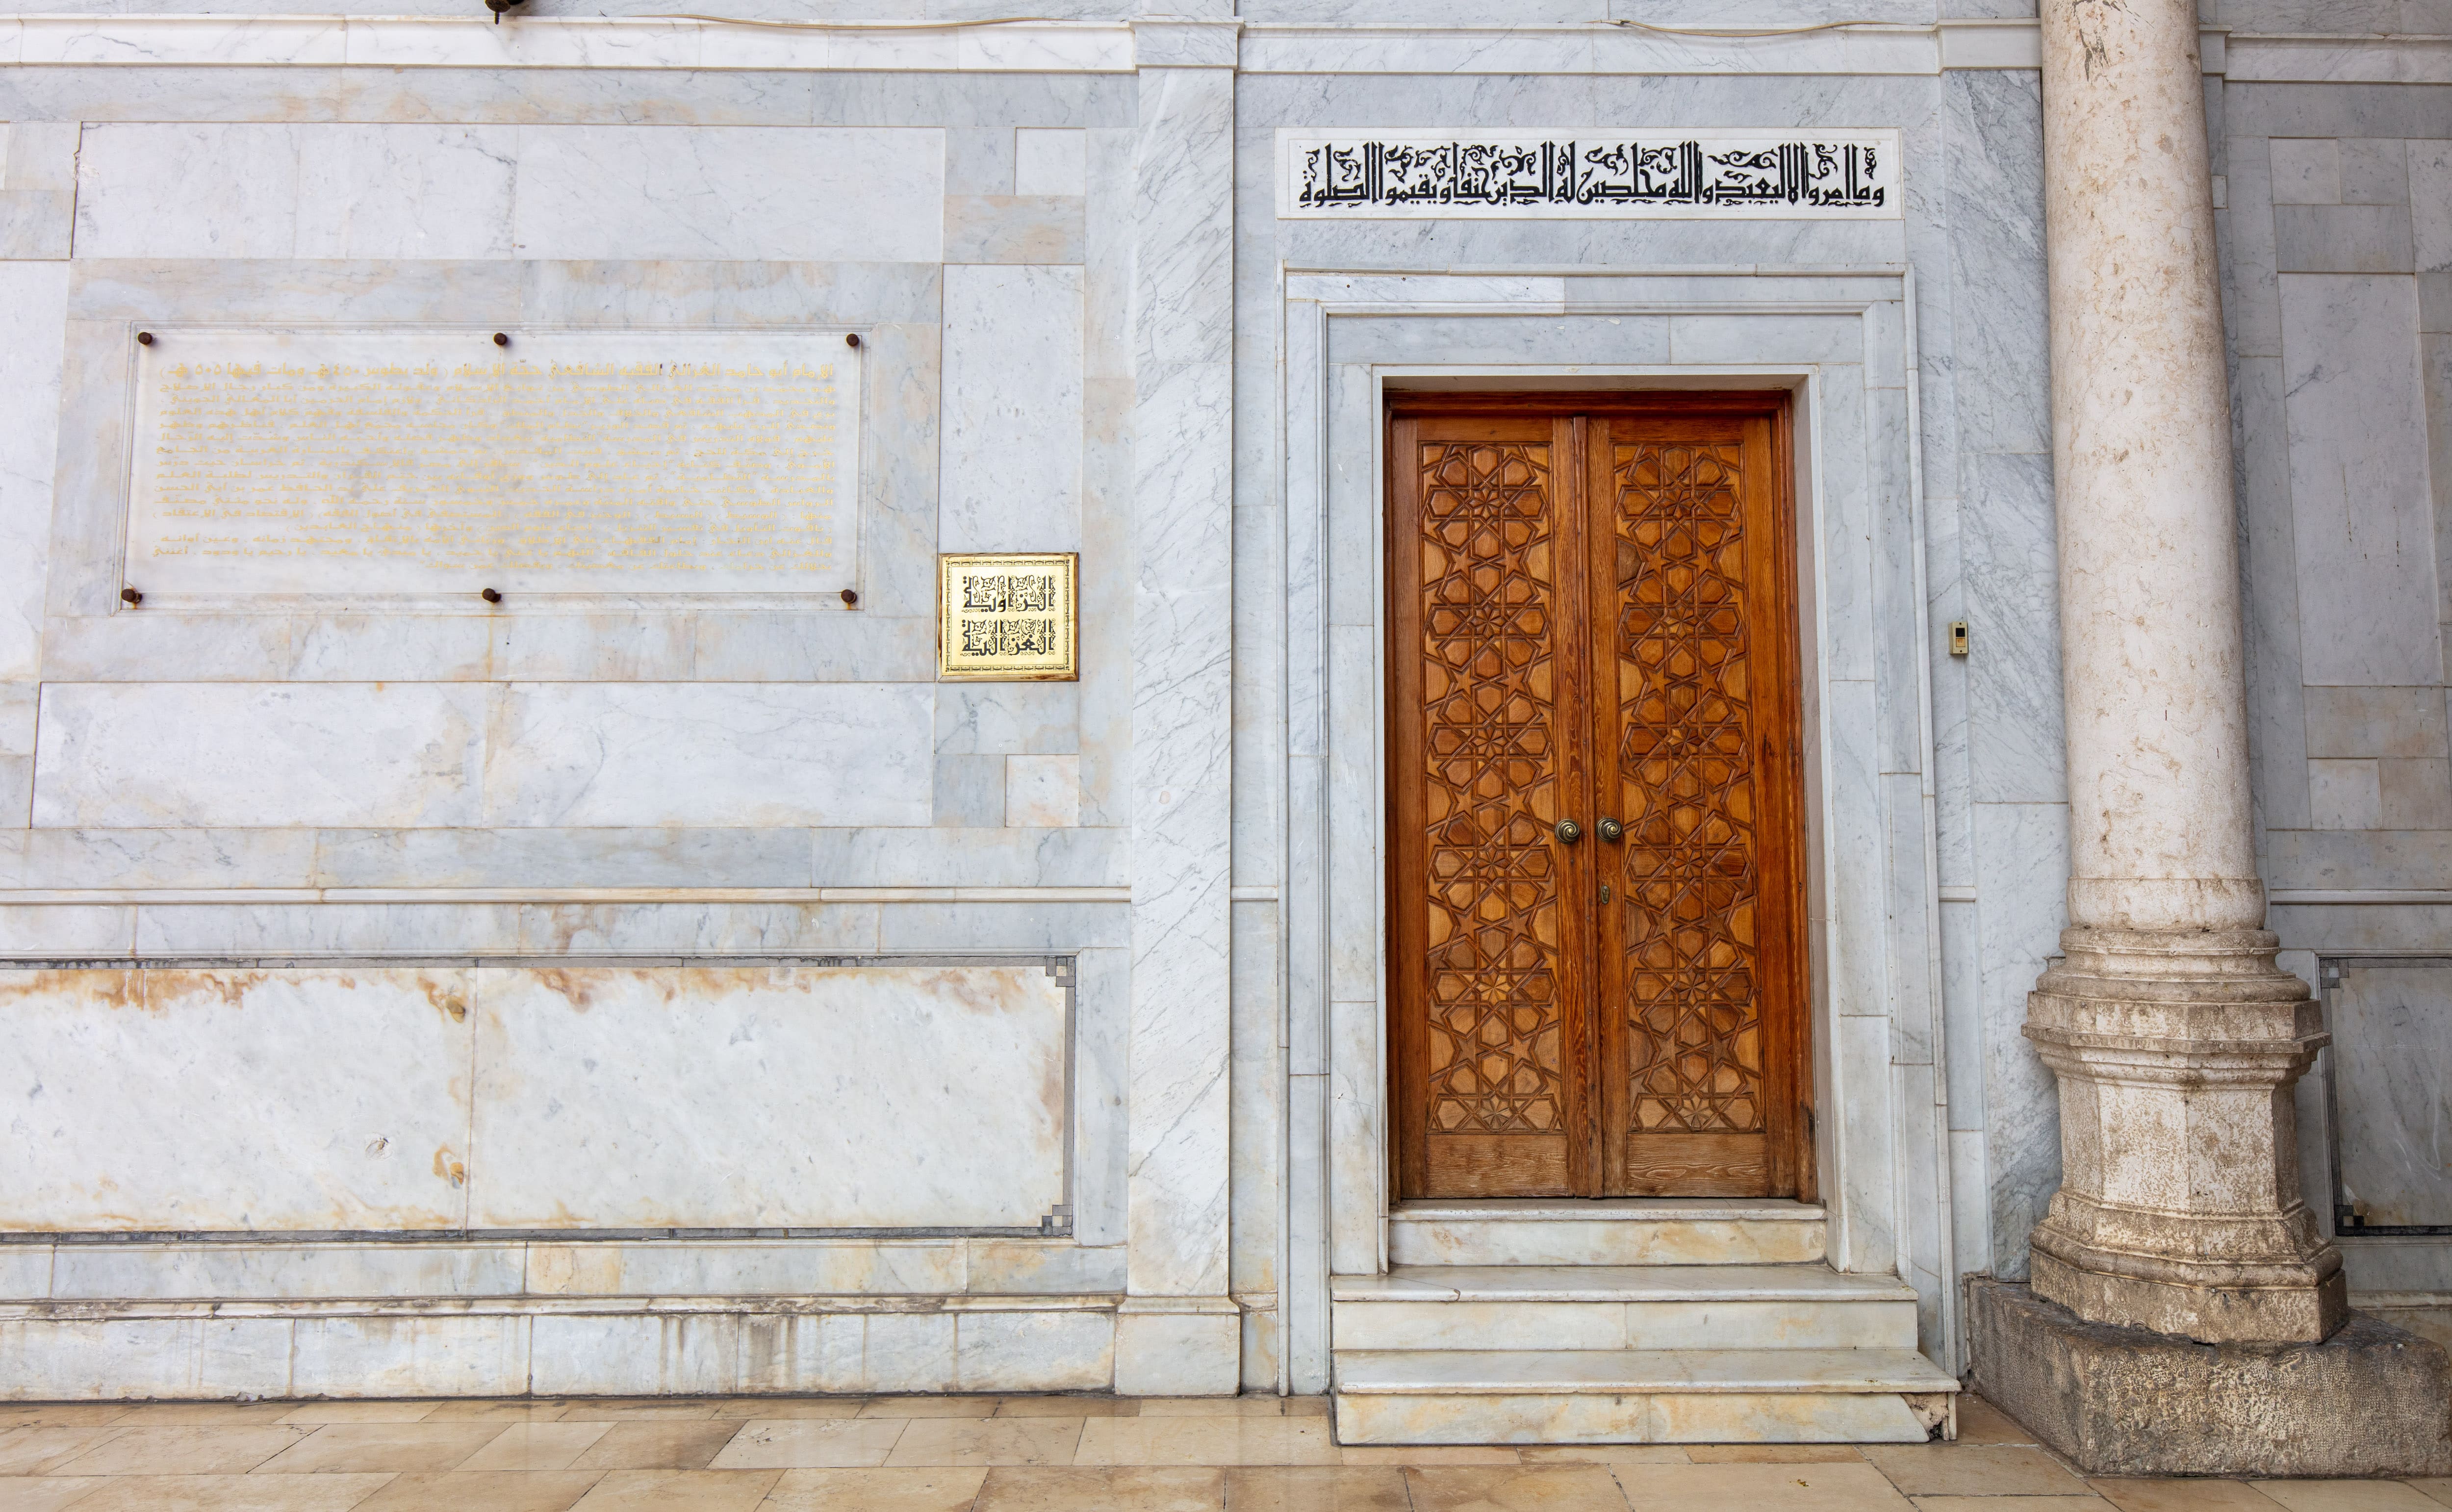 UMAYYAD-GHAZALI-mosque